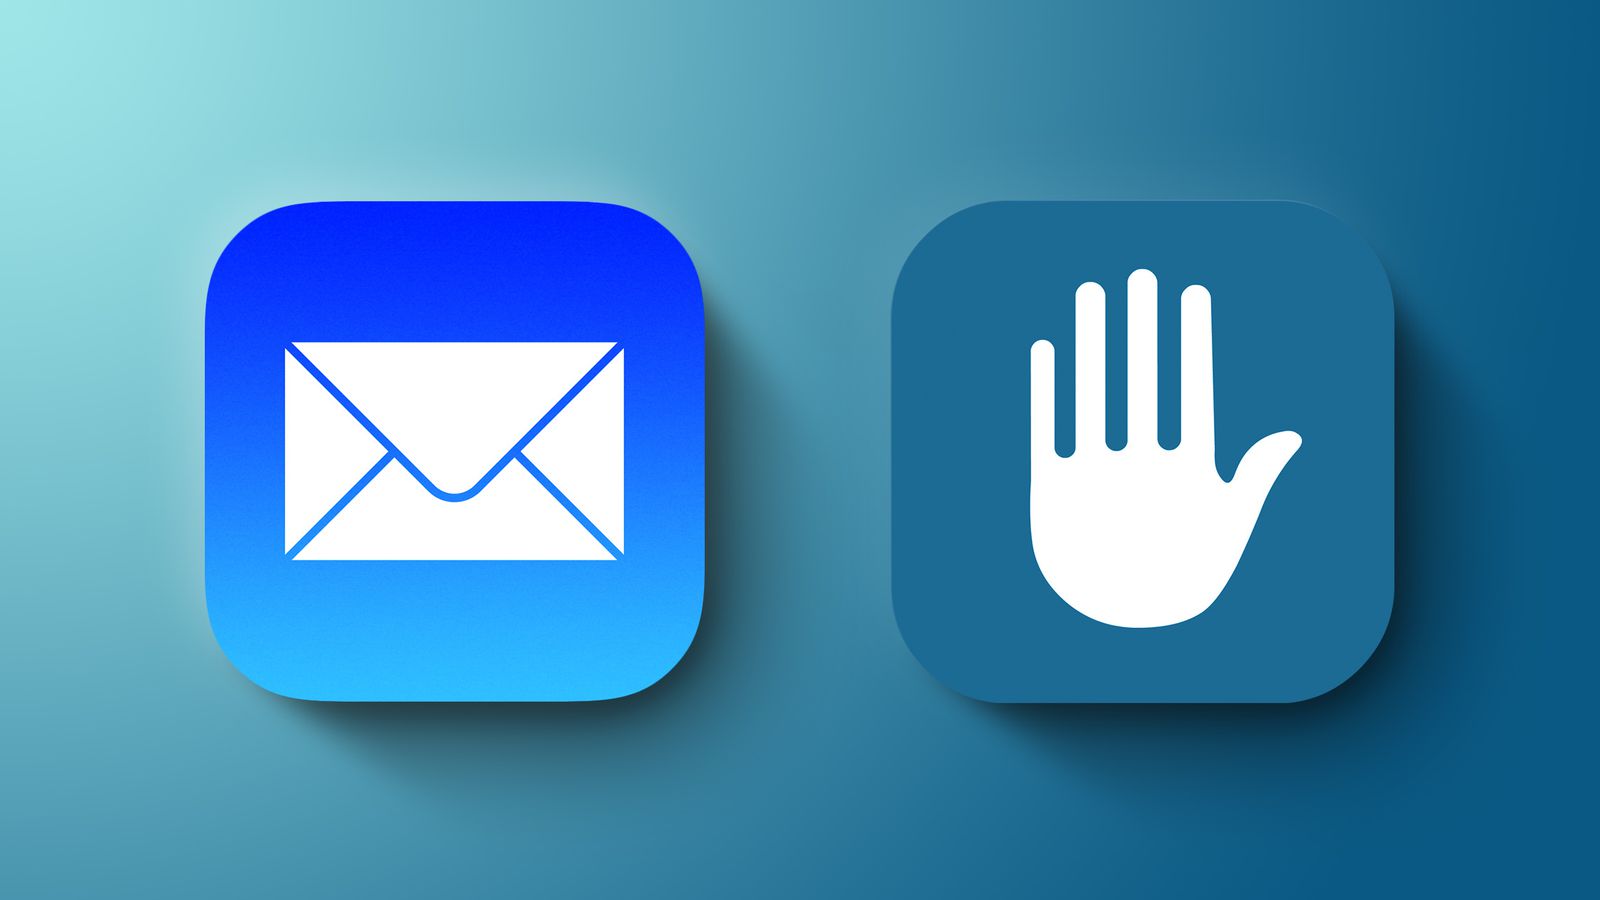 iOS 15.2 beta 2 wprowadza cztery istotne zmiany ciekawostki nowosci w iOS 15.2 beta 2, ipadOS 15.2, iOS 15.2 beta 2, co nowego w ios 15.2 beta 2  iOS 15.2 beta 2 i iPadOS 15.2 beta 2 są już dostępne dla deweloperów od wczoraj. Jak się okazuje najnowsze bety wprowadzają cztery ważne zmiany, o których musicie wiedzieć. mail